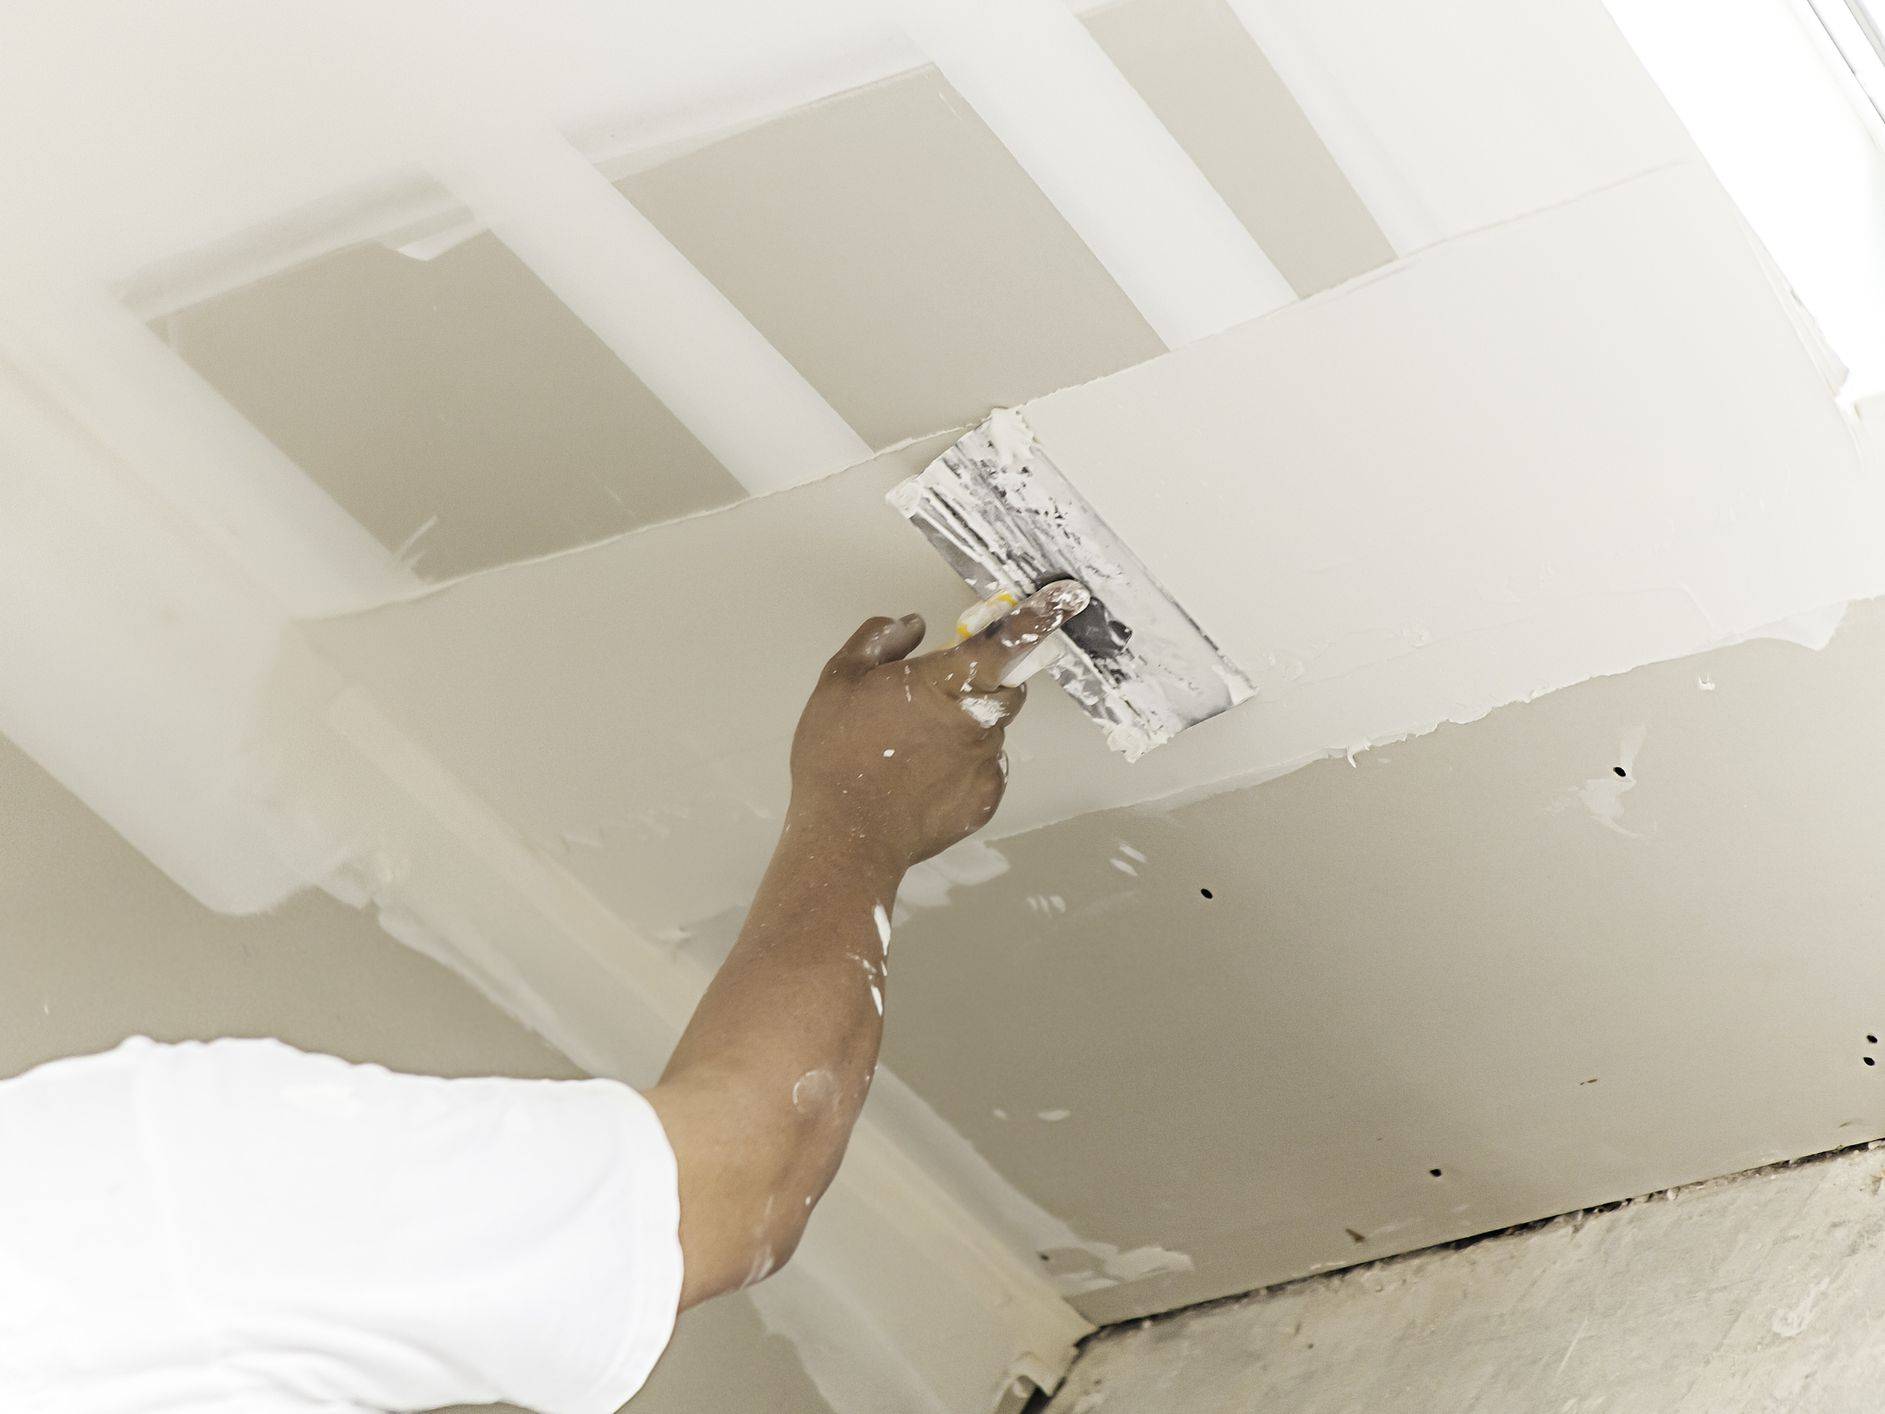 Покраска потолка из гипсокартона: какой краской лучше красить гипсокартонный потолок, как и чем покрасить подвесной потолок